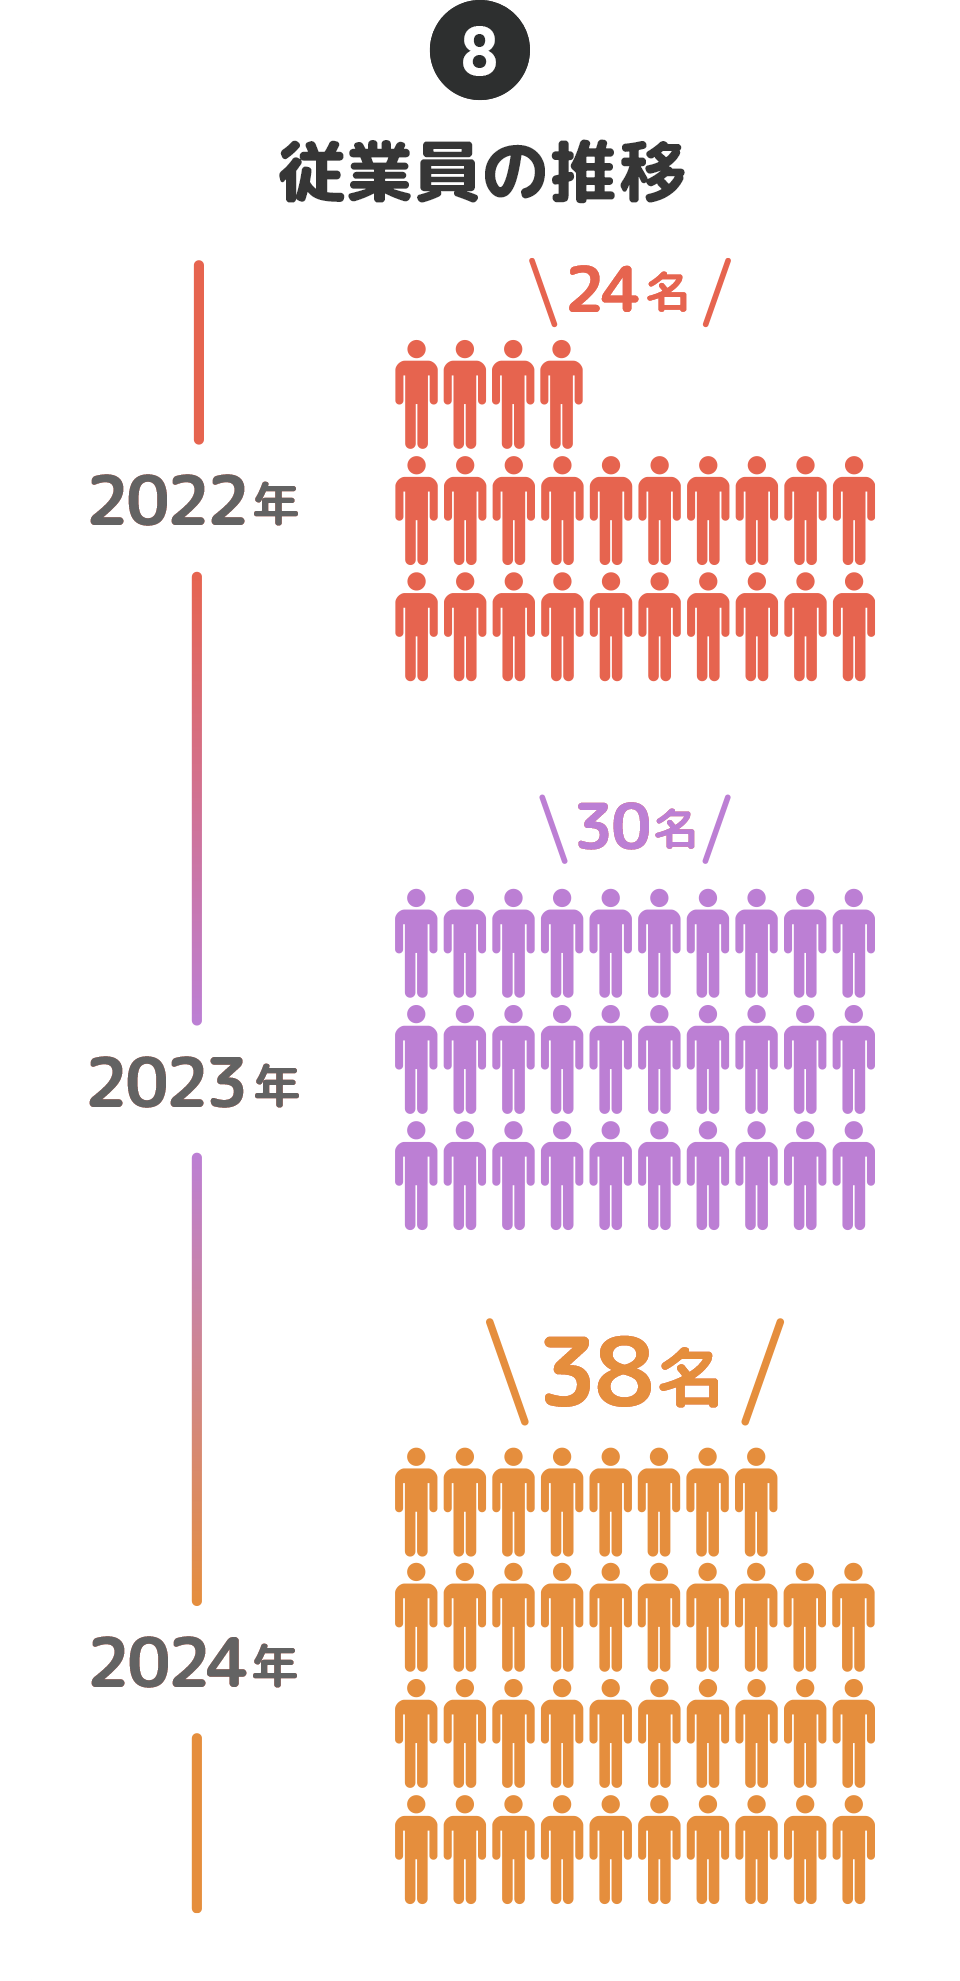 ⑧従業員の推移…2022年:24名→2023年:30名→2024年:38名